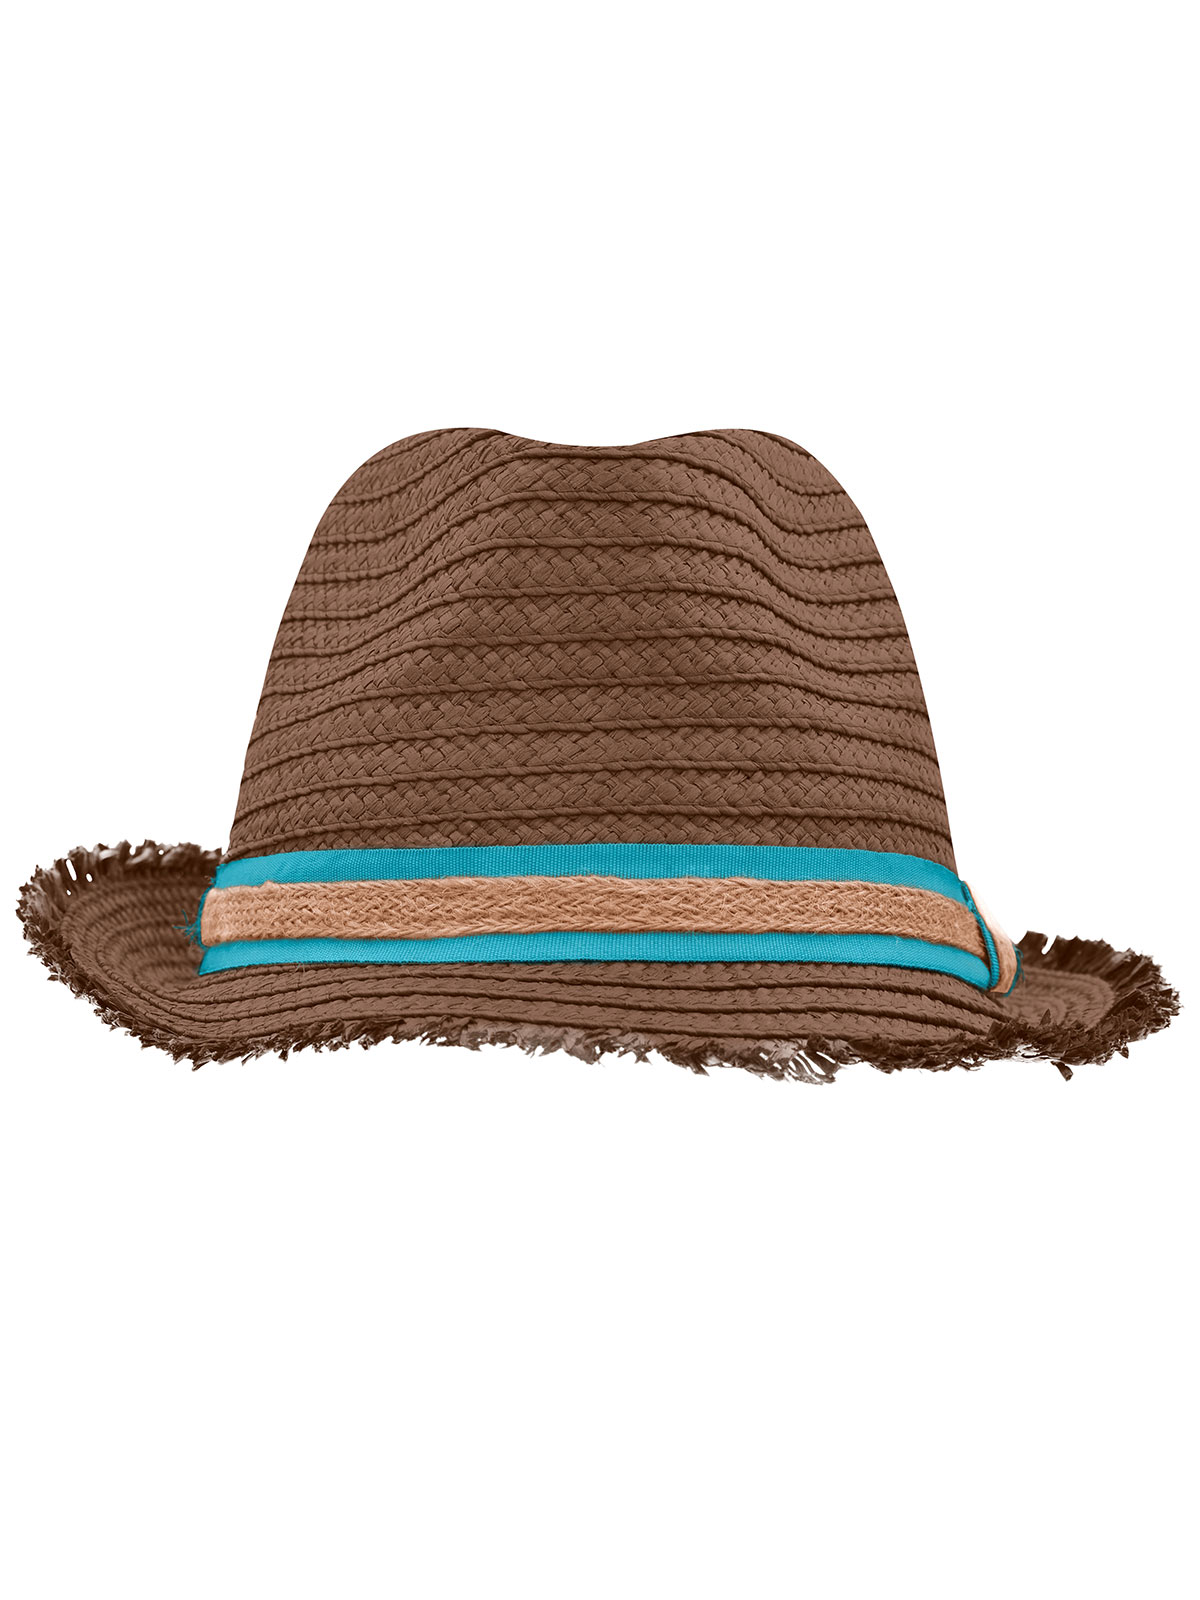 trendy-summer-hat-nougat-tourquoise.webp